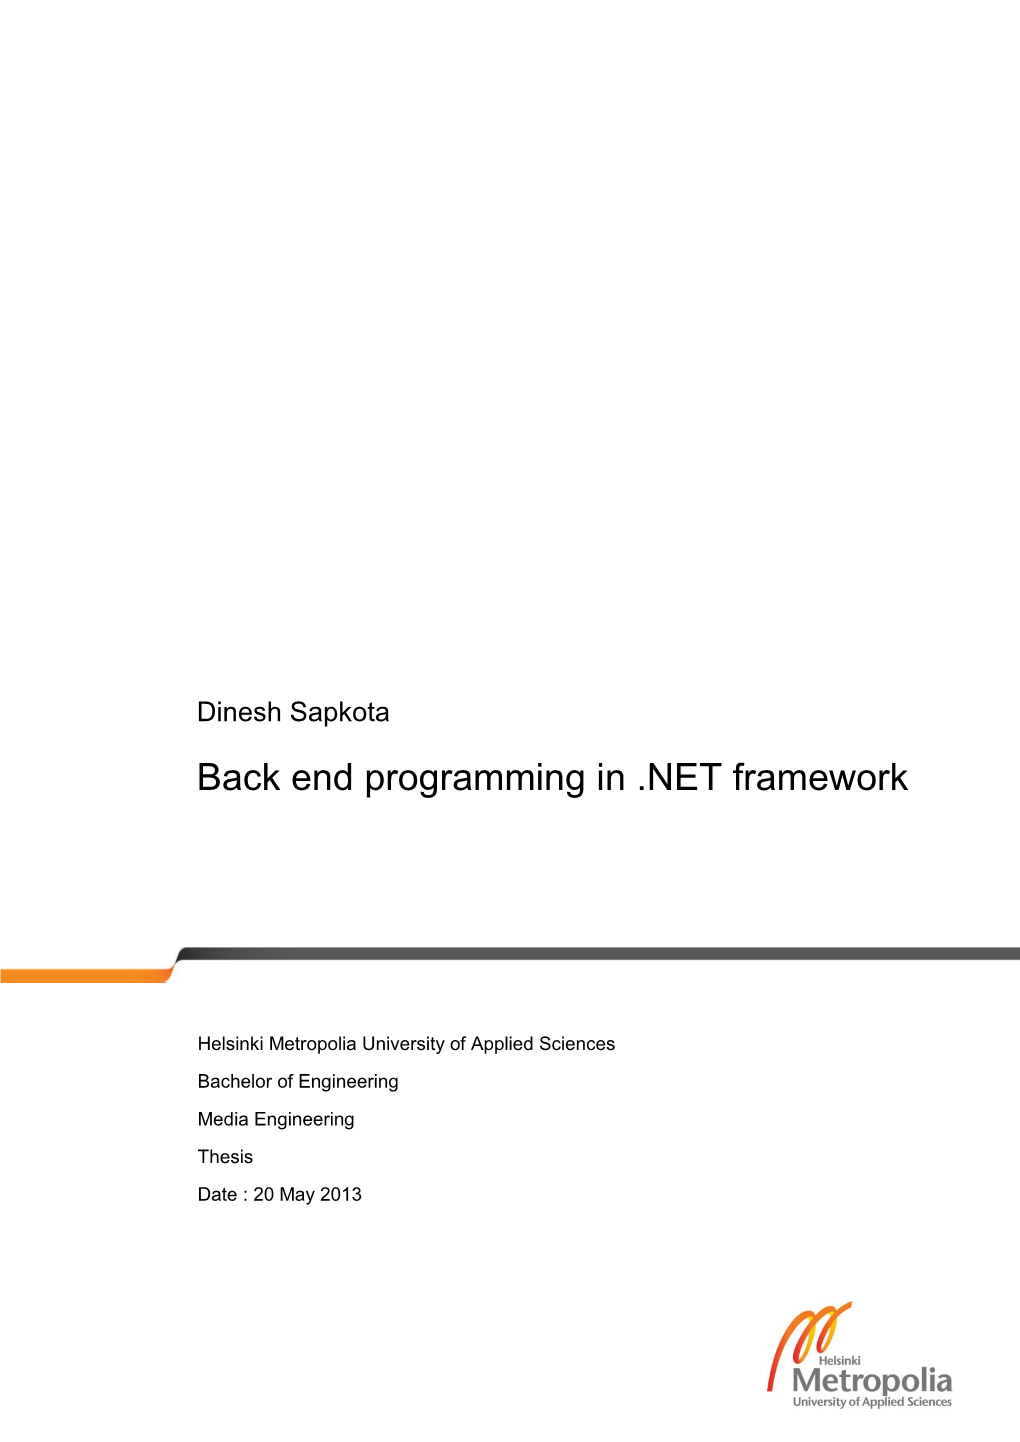 Back End Programming in .NET Framework